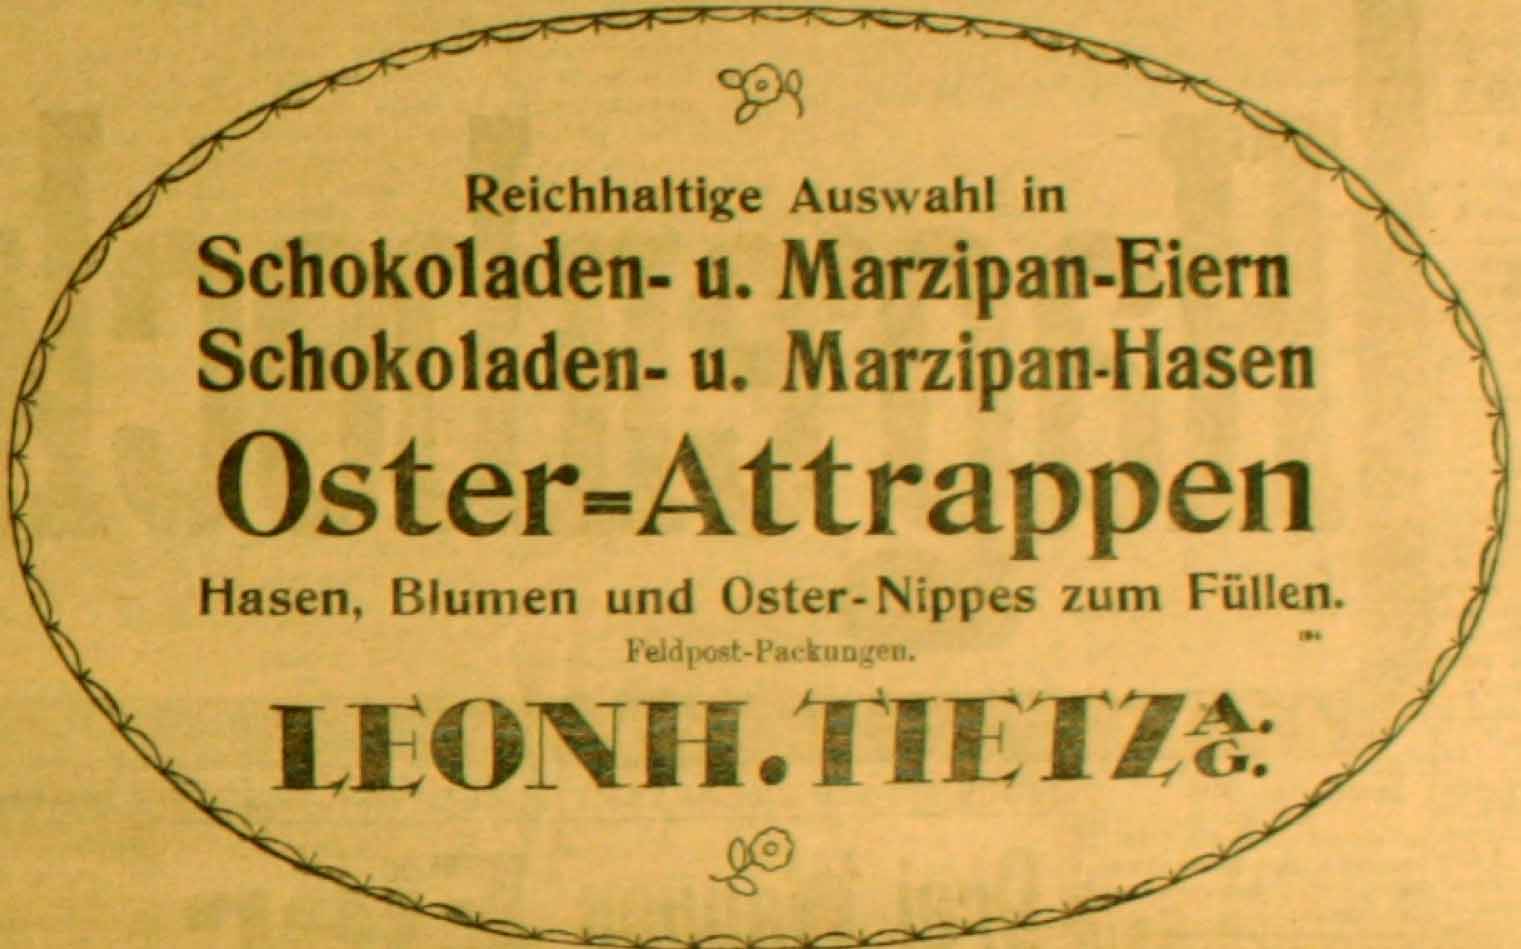 Anzeige in der Deutschen Reichs-Zeitung vom 19. April 1916